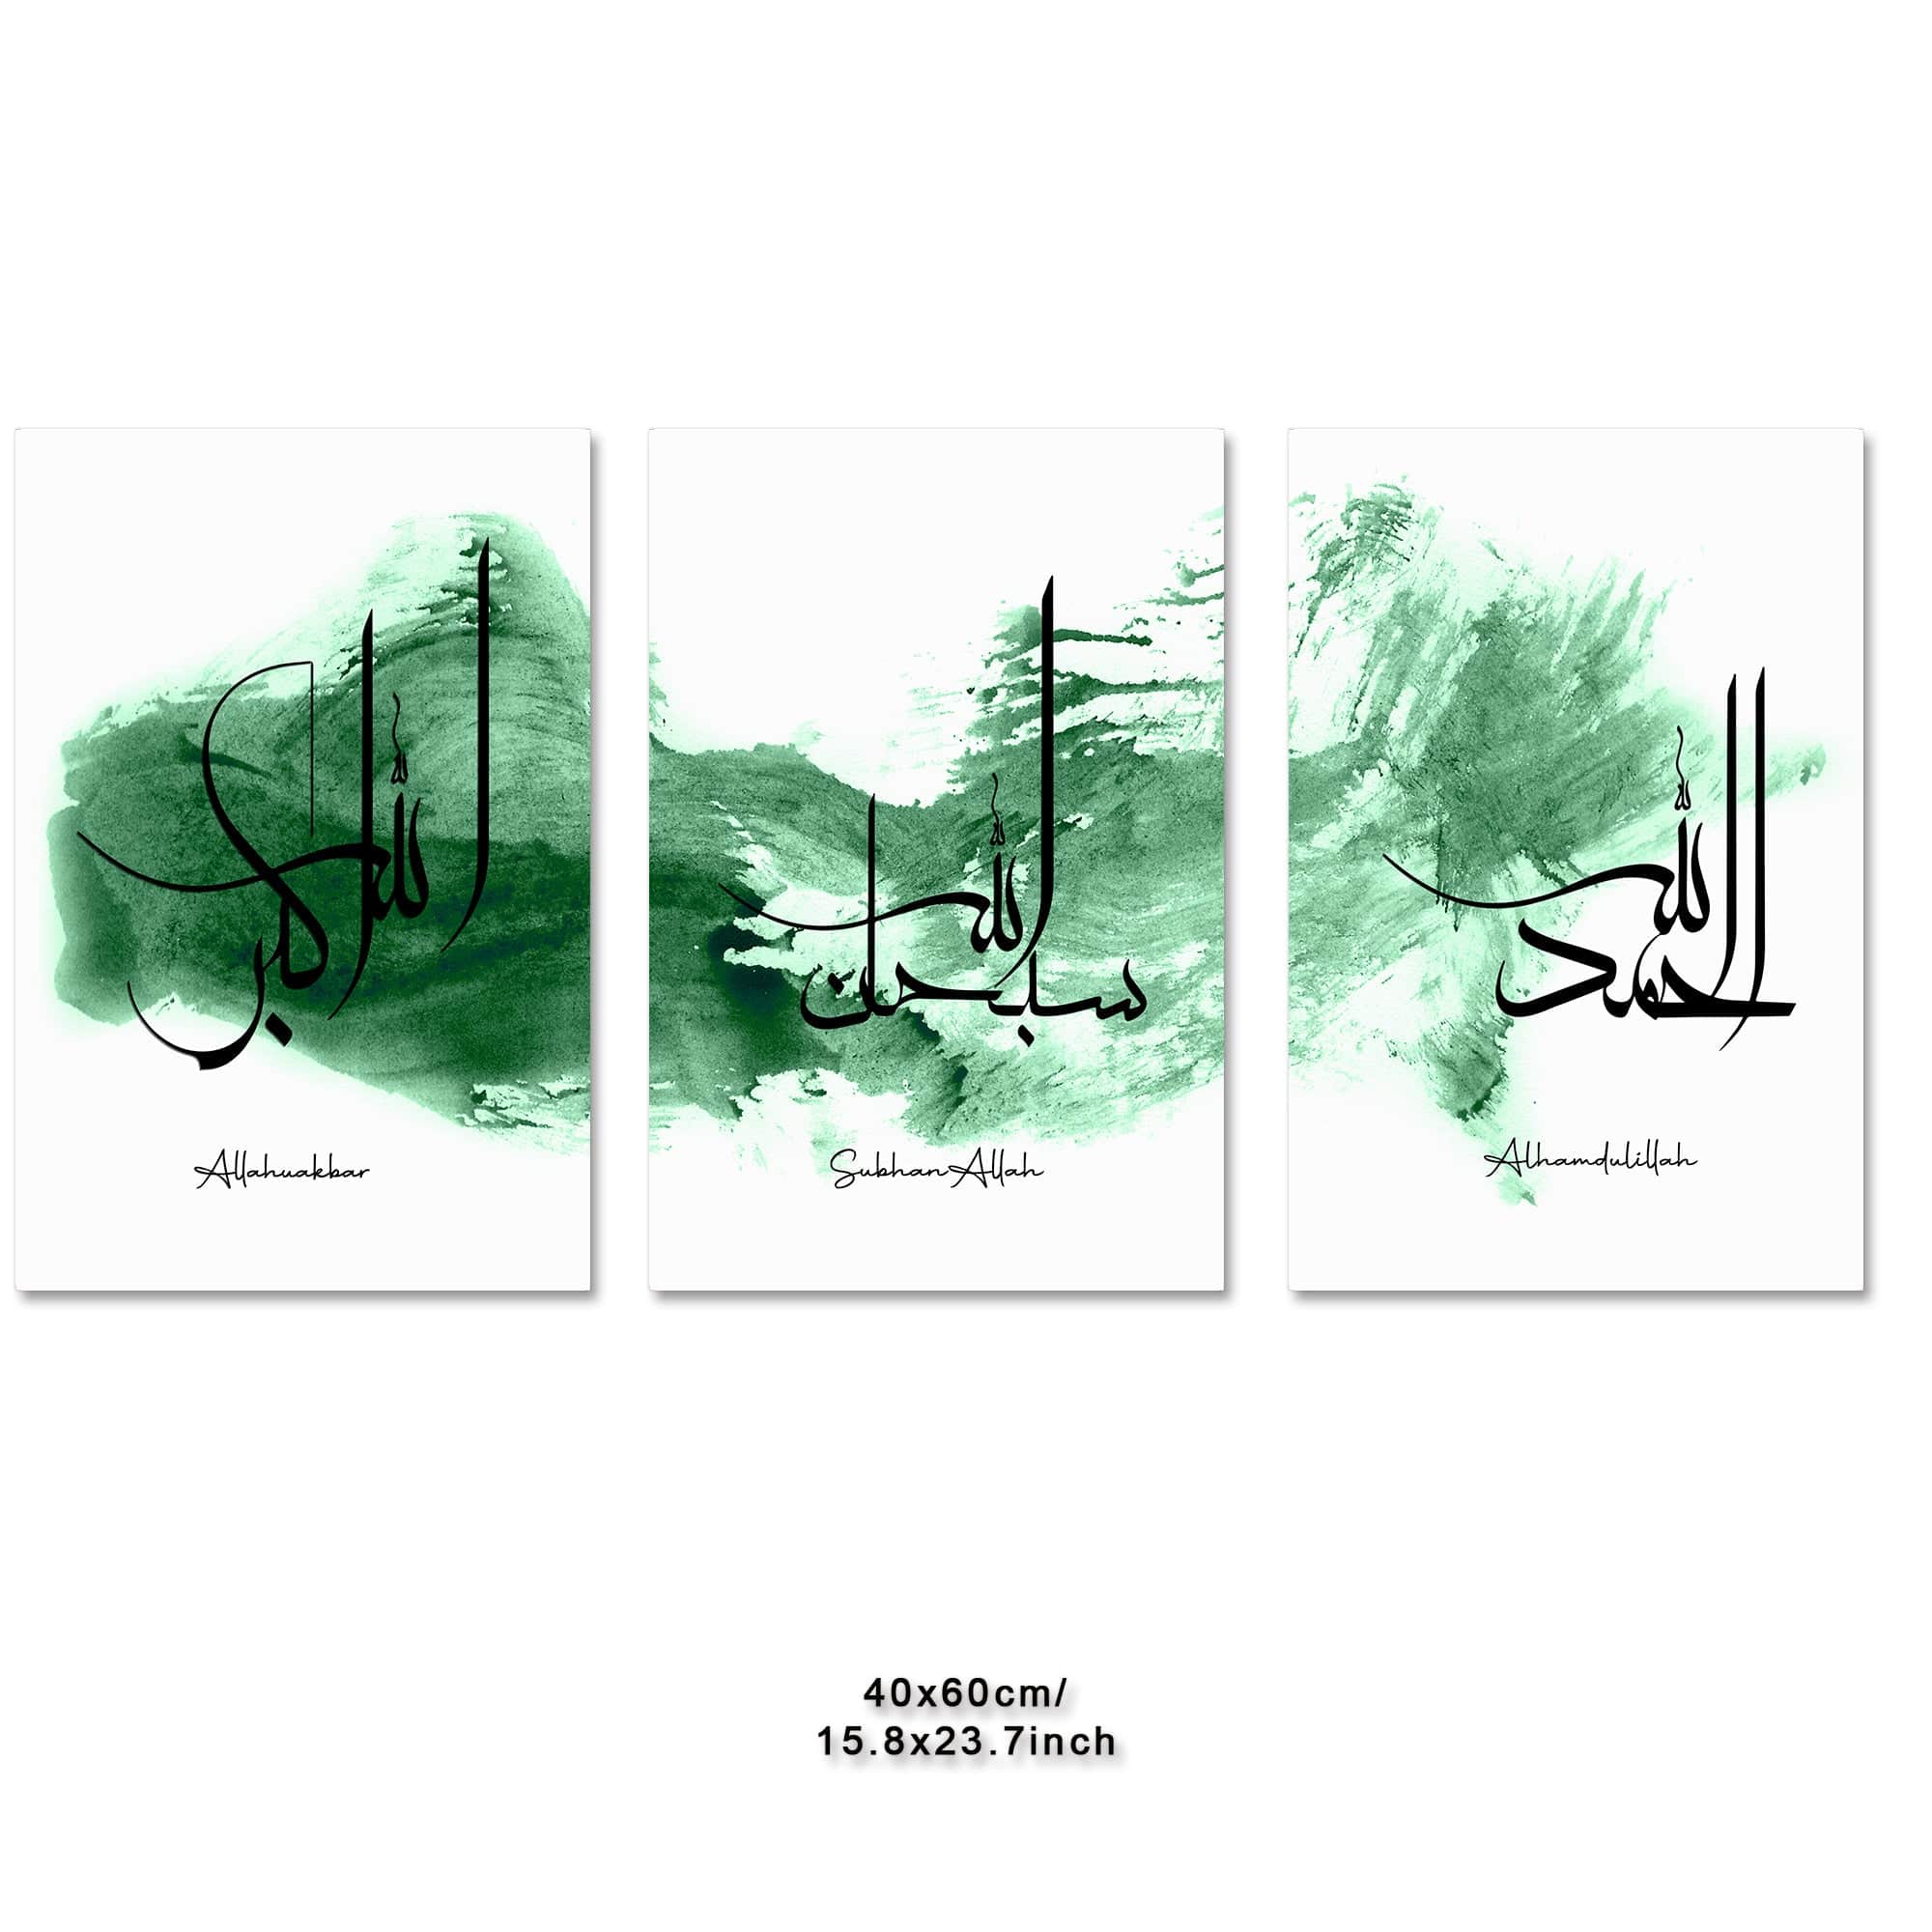 deen-souvenir customized 3-teiliges Islamisches Leinwandbild mit Motivationszitat - Typografie Kunstwerk